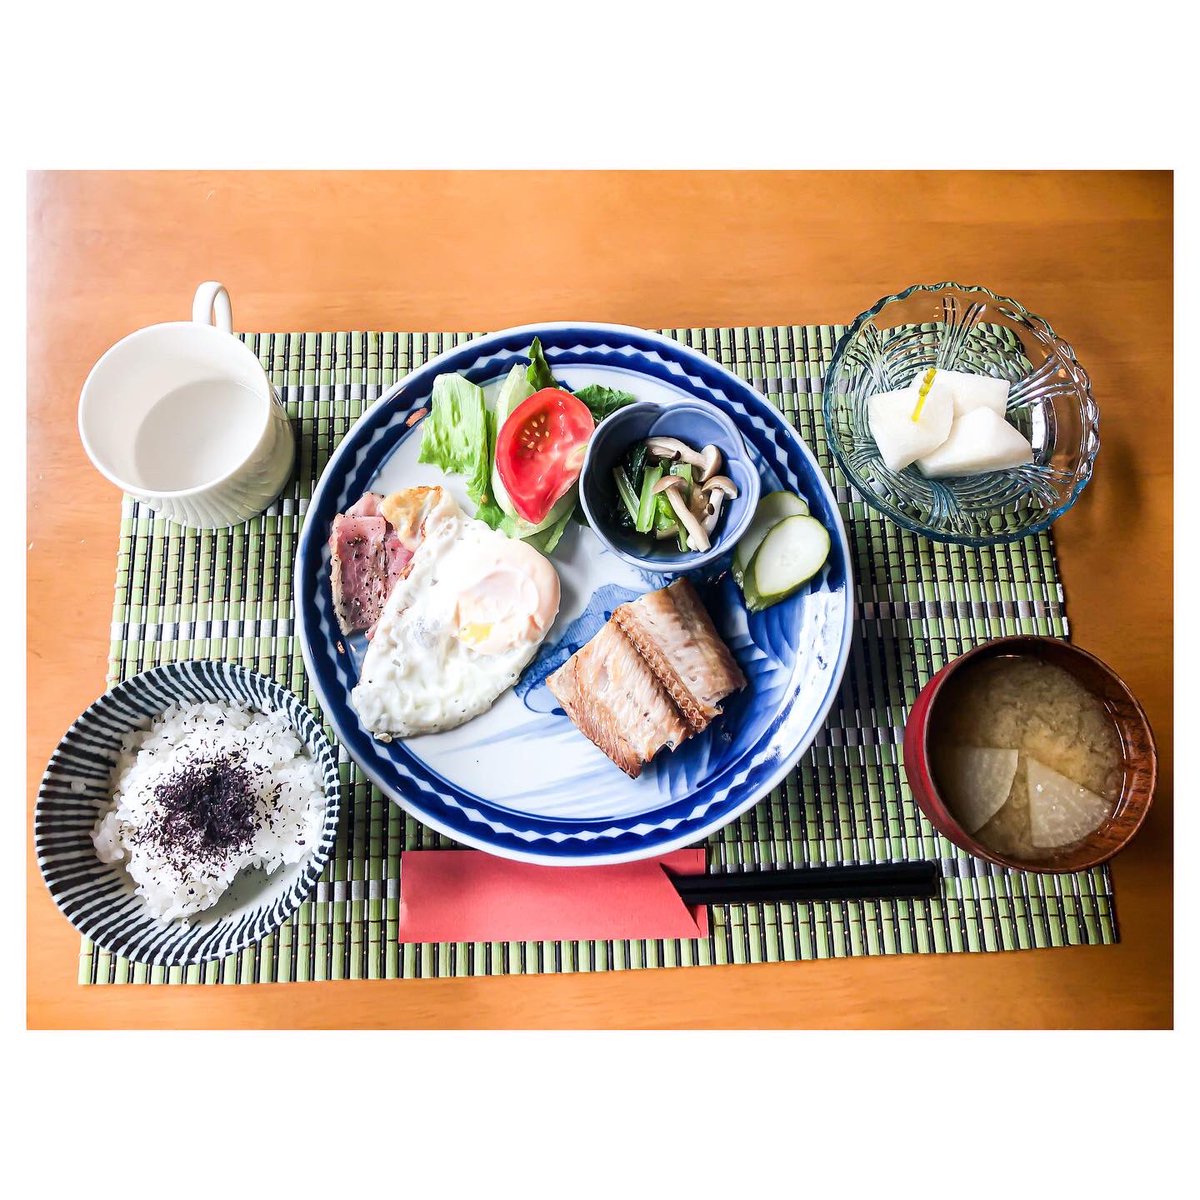 Three breakfasts 💛

#breakfast #japanesefood #japan #mostimportantmealoftheday #livinginjapan #food